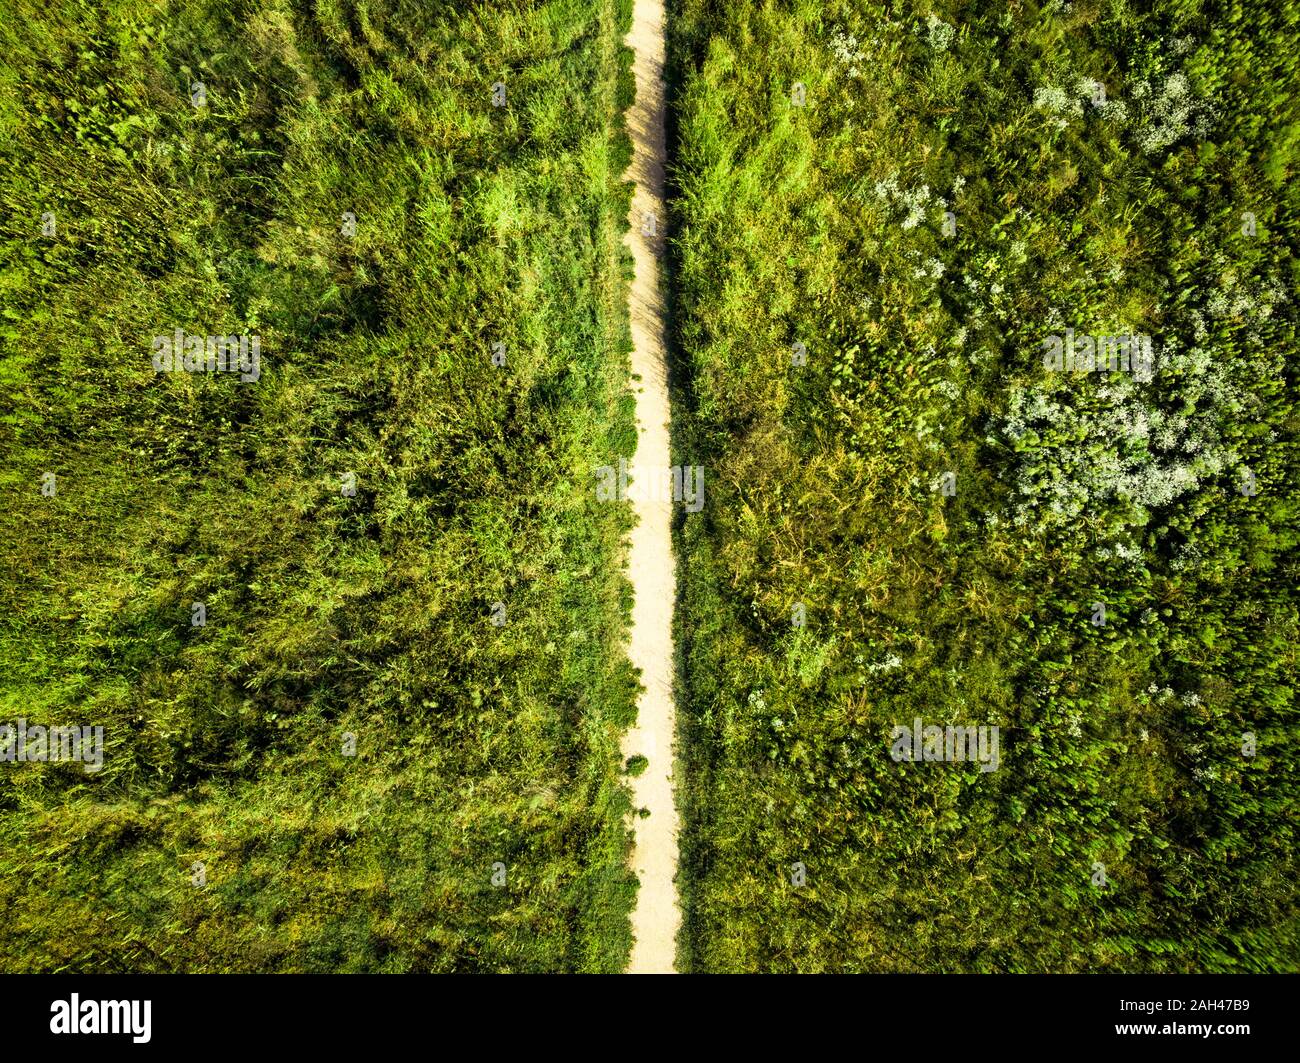 Germania, Berlino, vista aerea del vuoto su strada sterrata in mezzo al verde della vegetazione Foto Stock